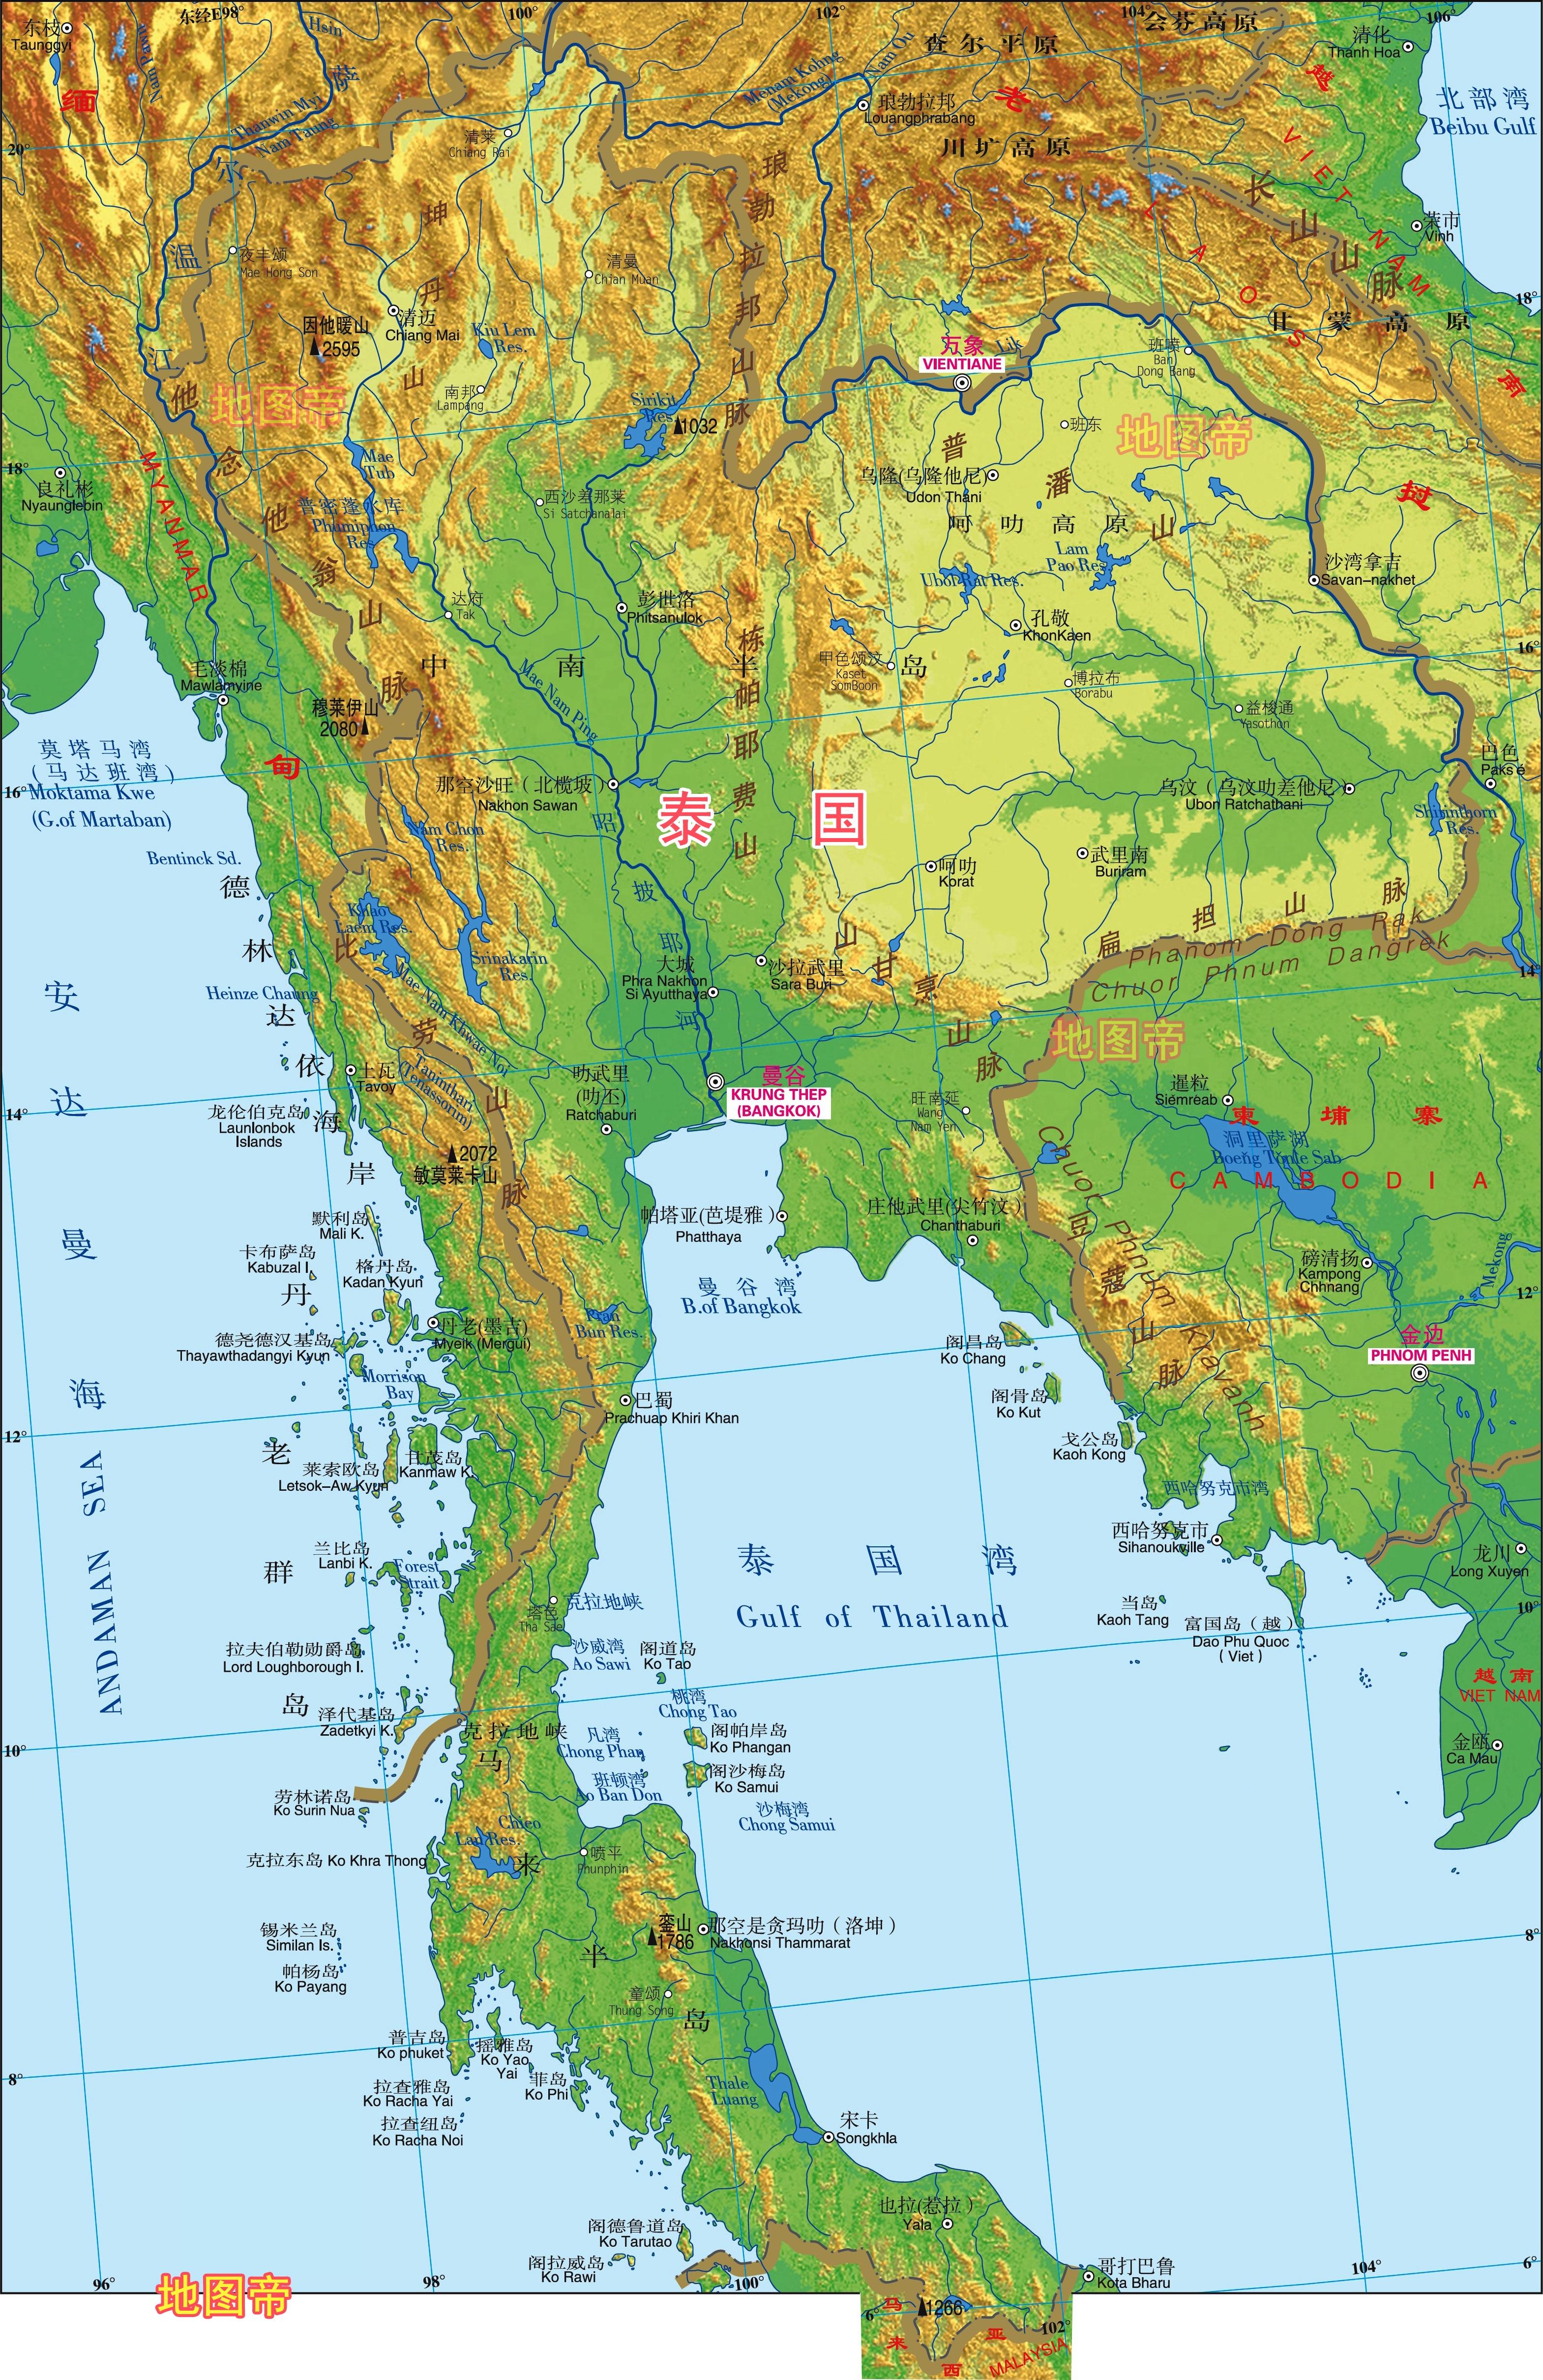 泰国地图,泰国地图中文版,泰国地图全图 - 世界地图全图 - 地理教师网